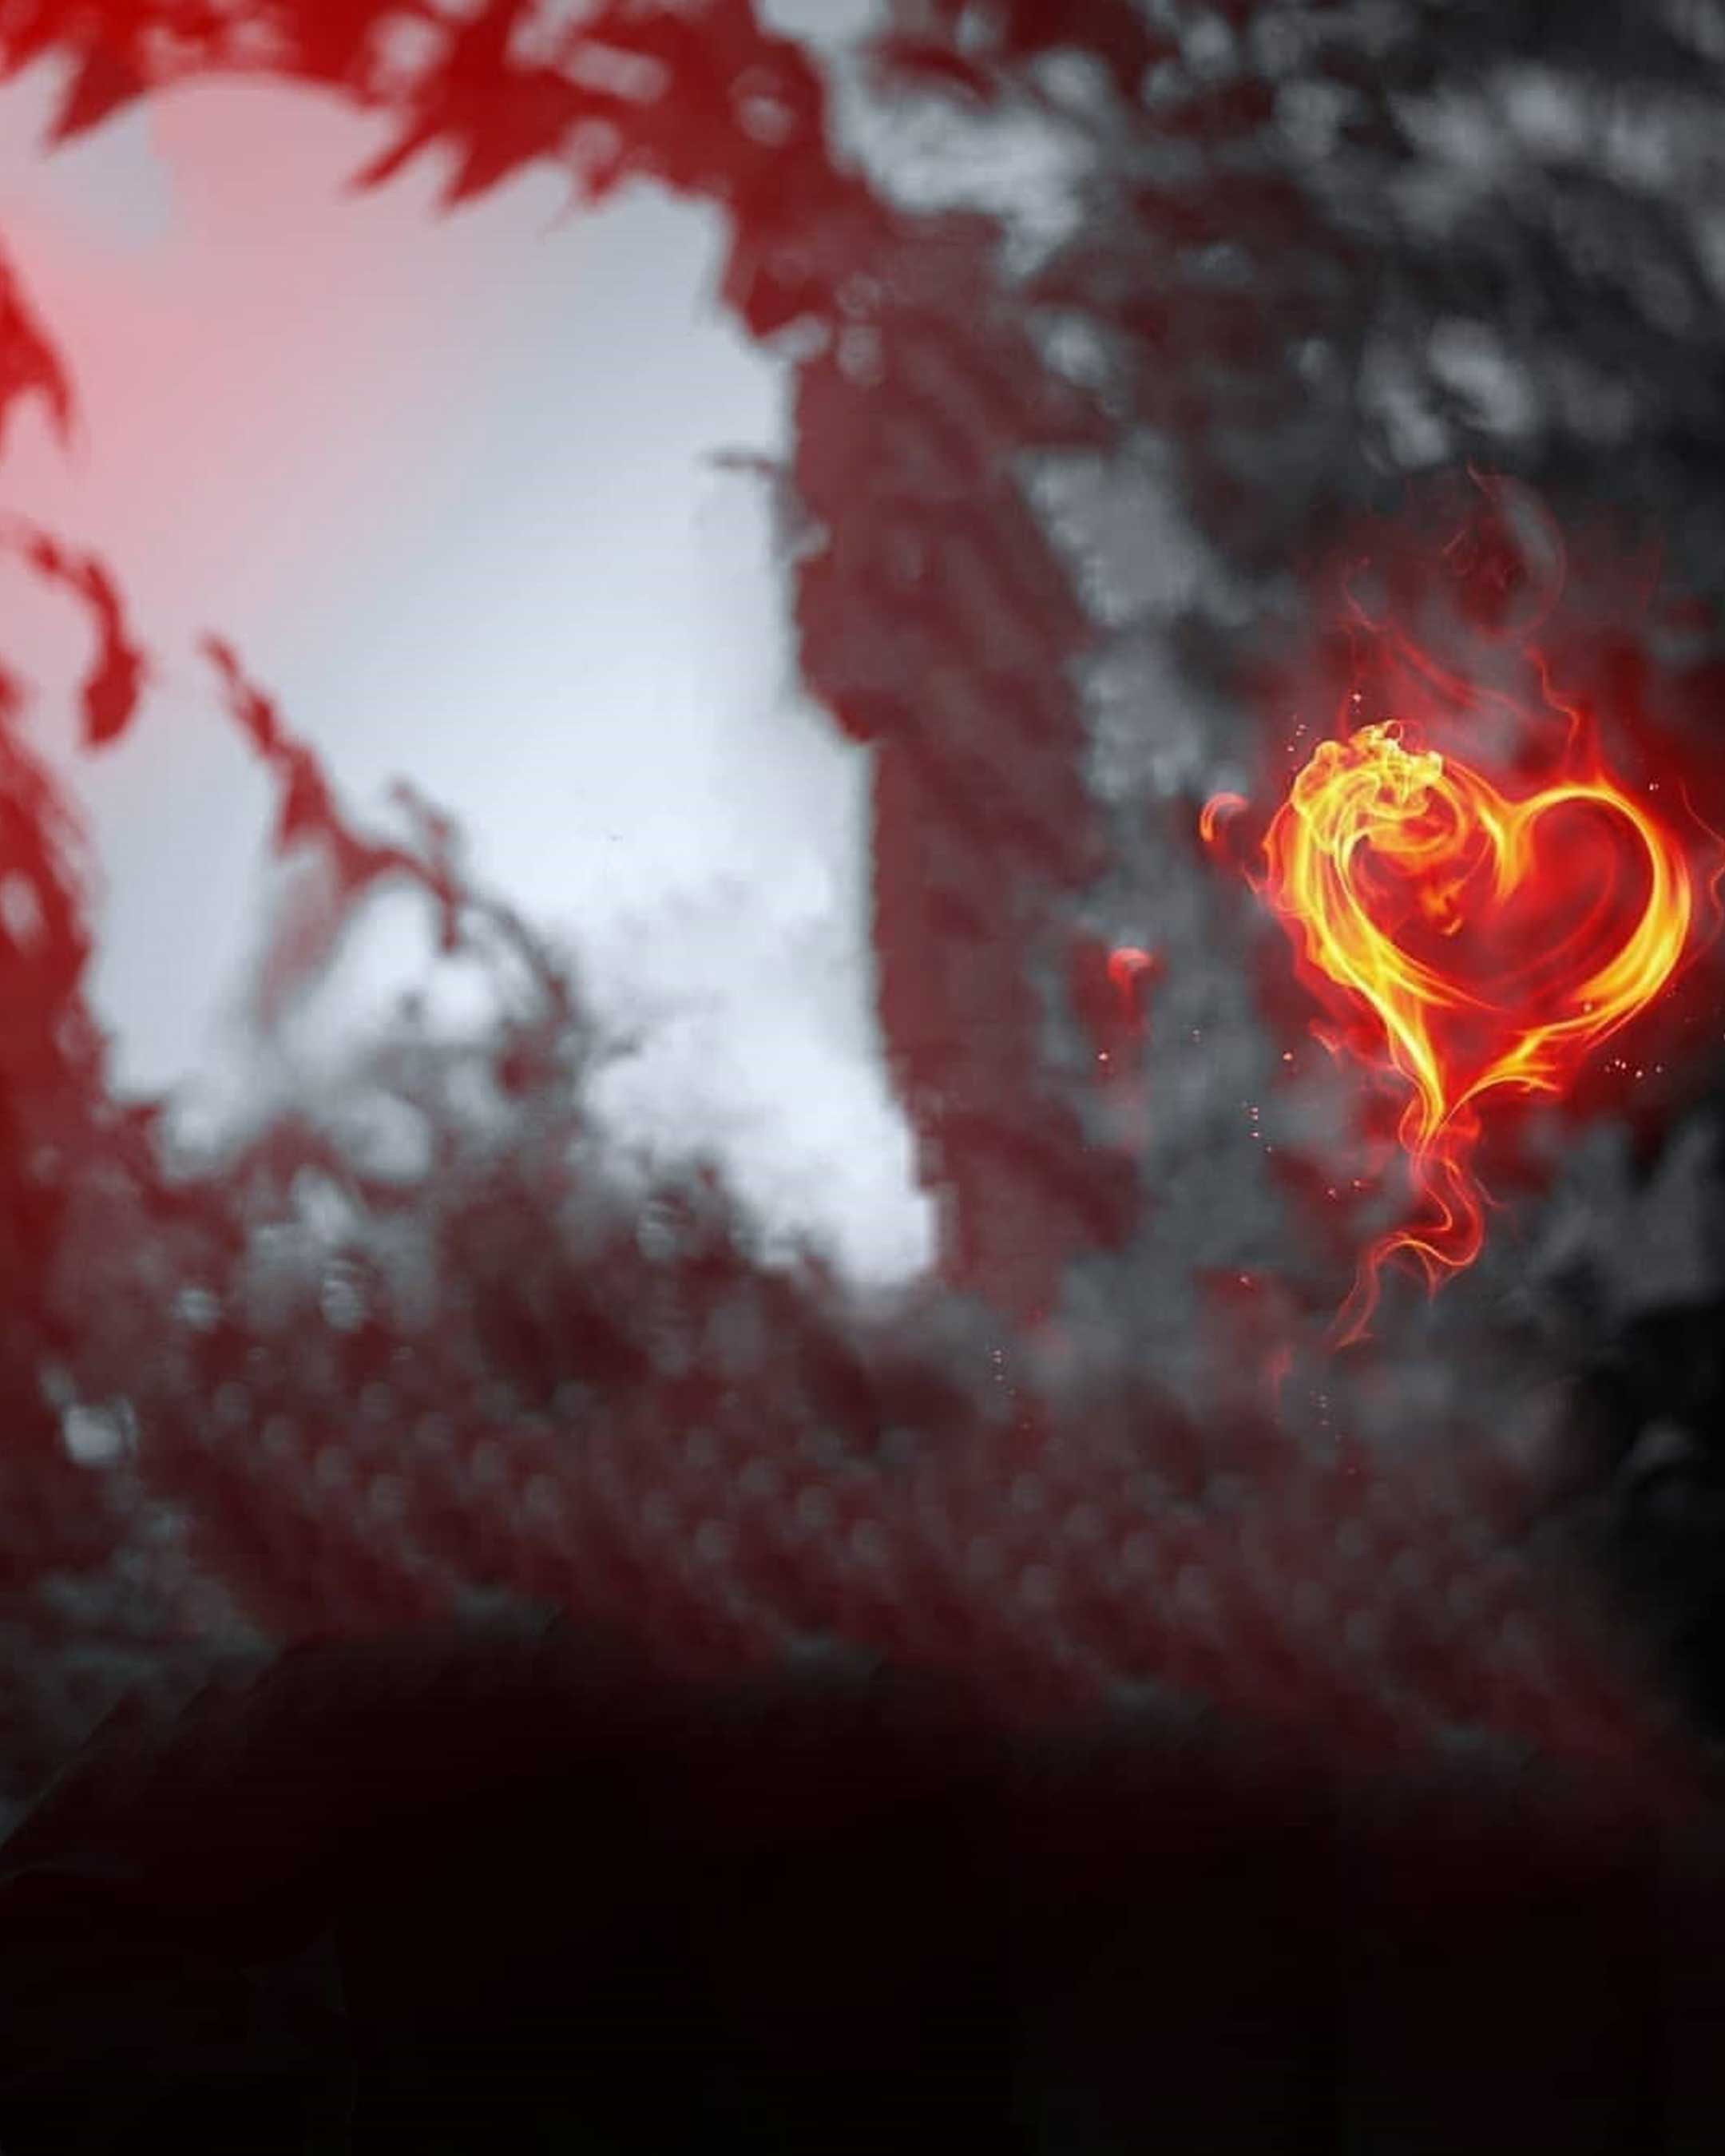 Hình nền Snapseed hình trái tim bị cháy miễn phí sẽ làm cho màn hình của bạn trở nên sống động và đầy cảm xúc. Hãy tải về và trang trí màn hình của bạn với những điều tuyệt vời nhất từ Snapseed.